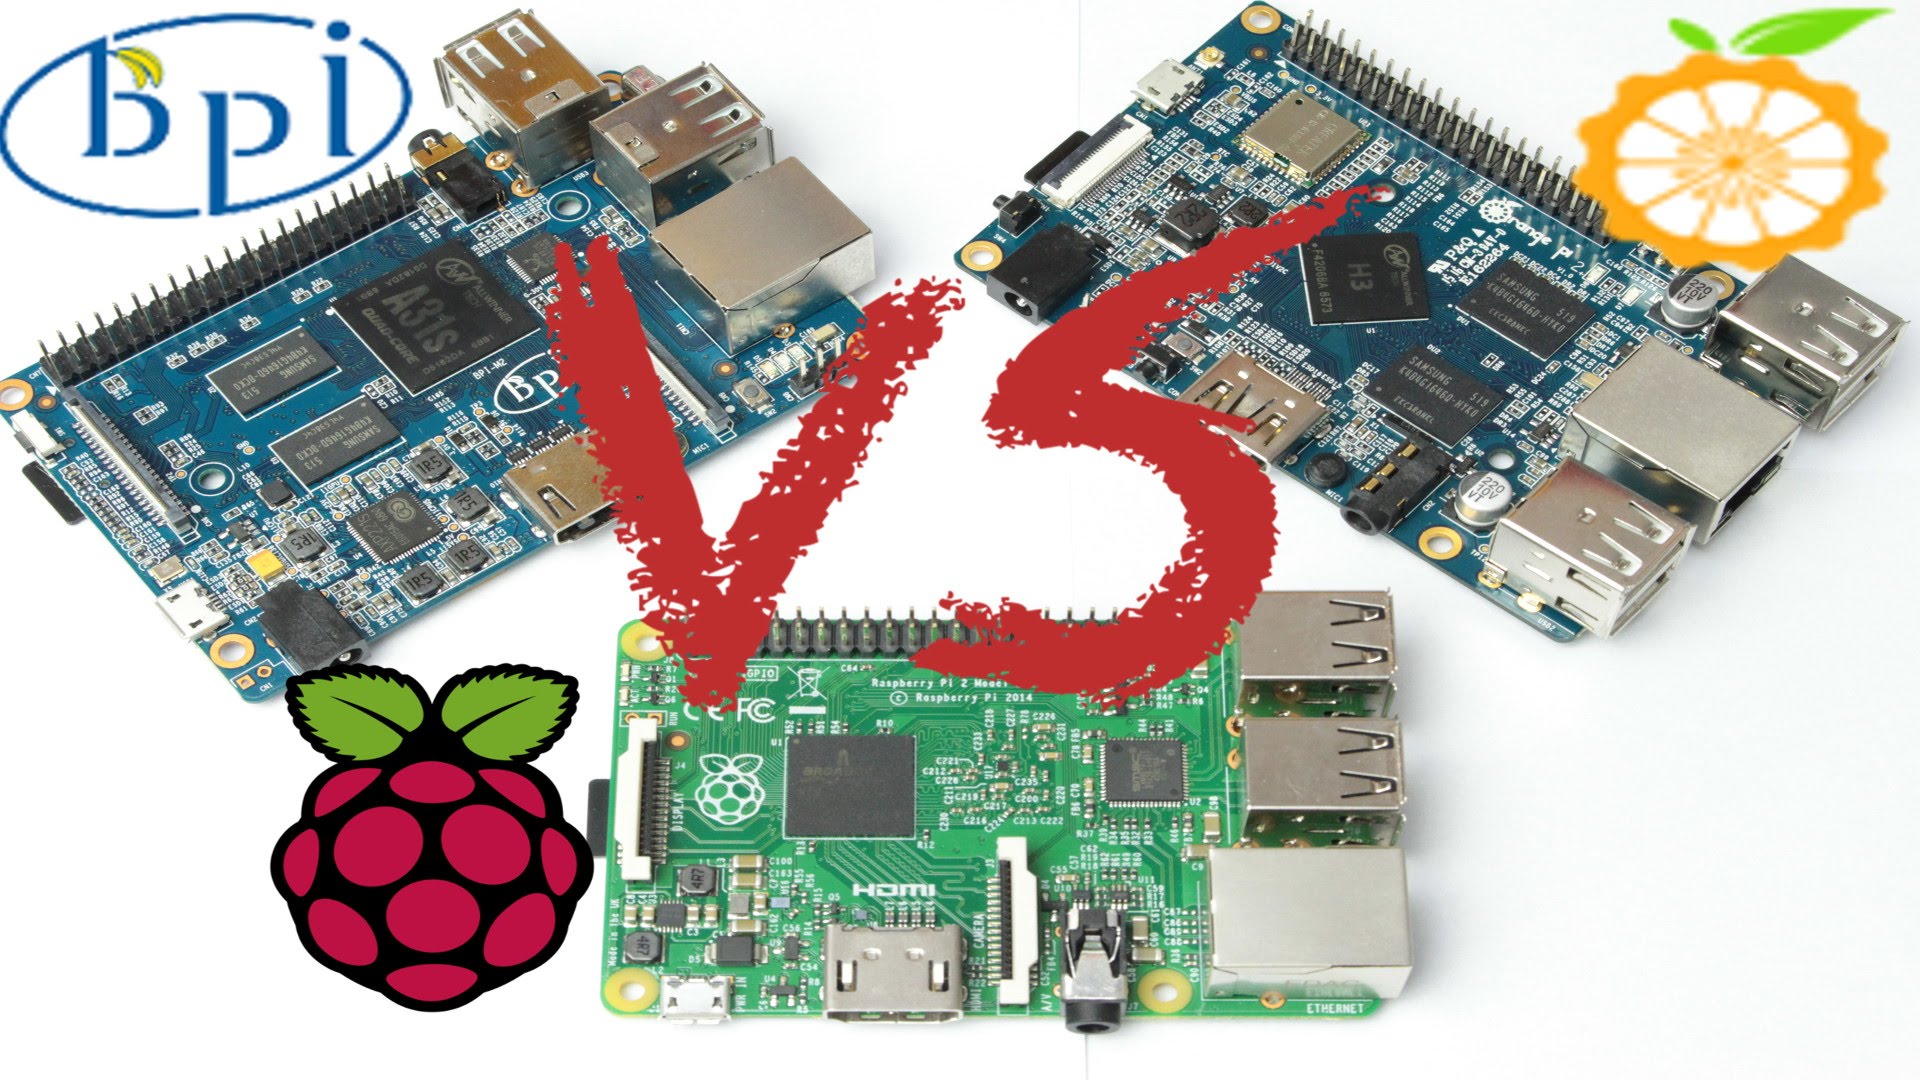 Raspberry Pi 2 VS Orange Pi 2 VS BPi-M2